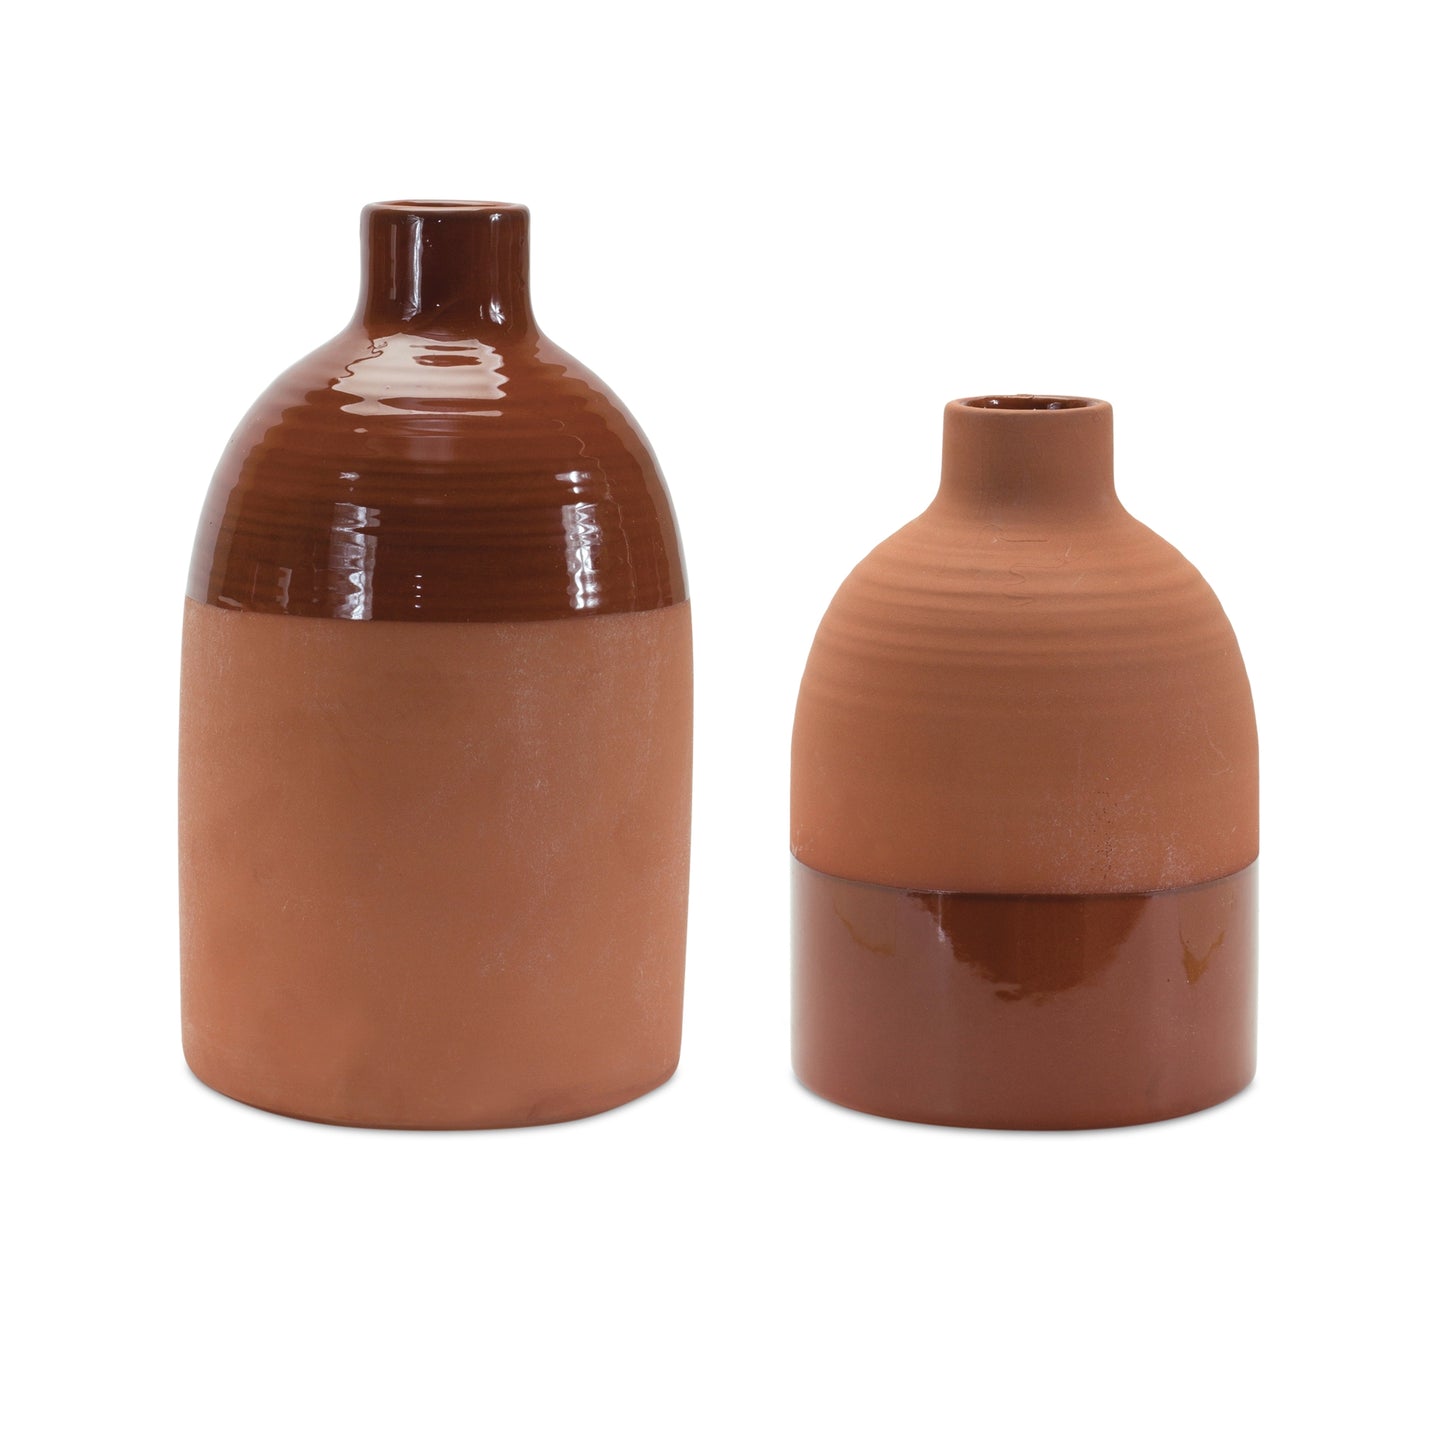 Vase (Set of 2) 4.75"D x 7"H, 5"D x 9"H Ceramic